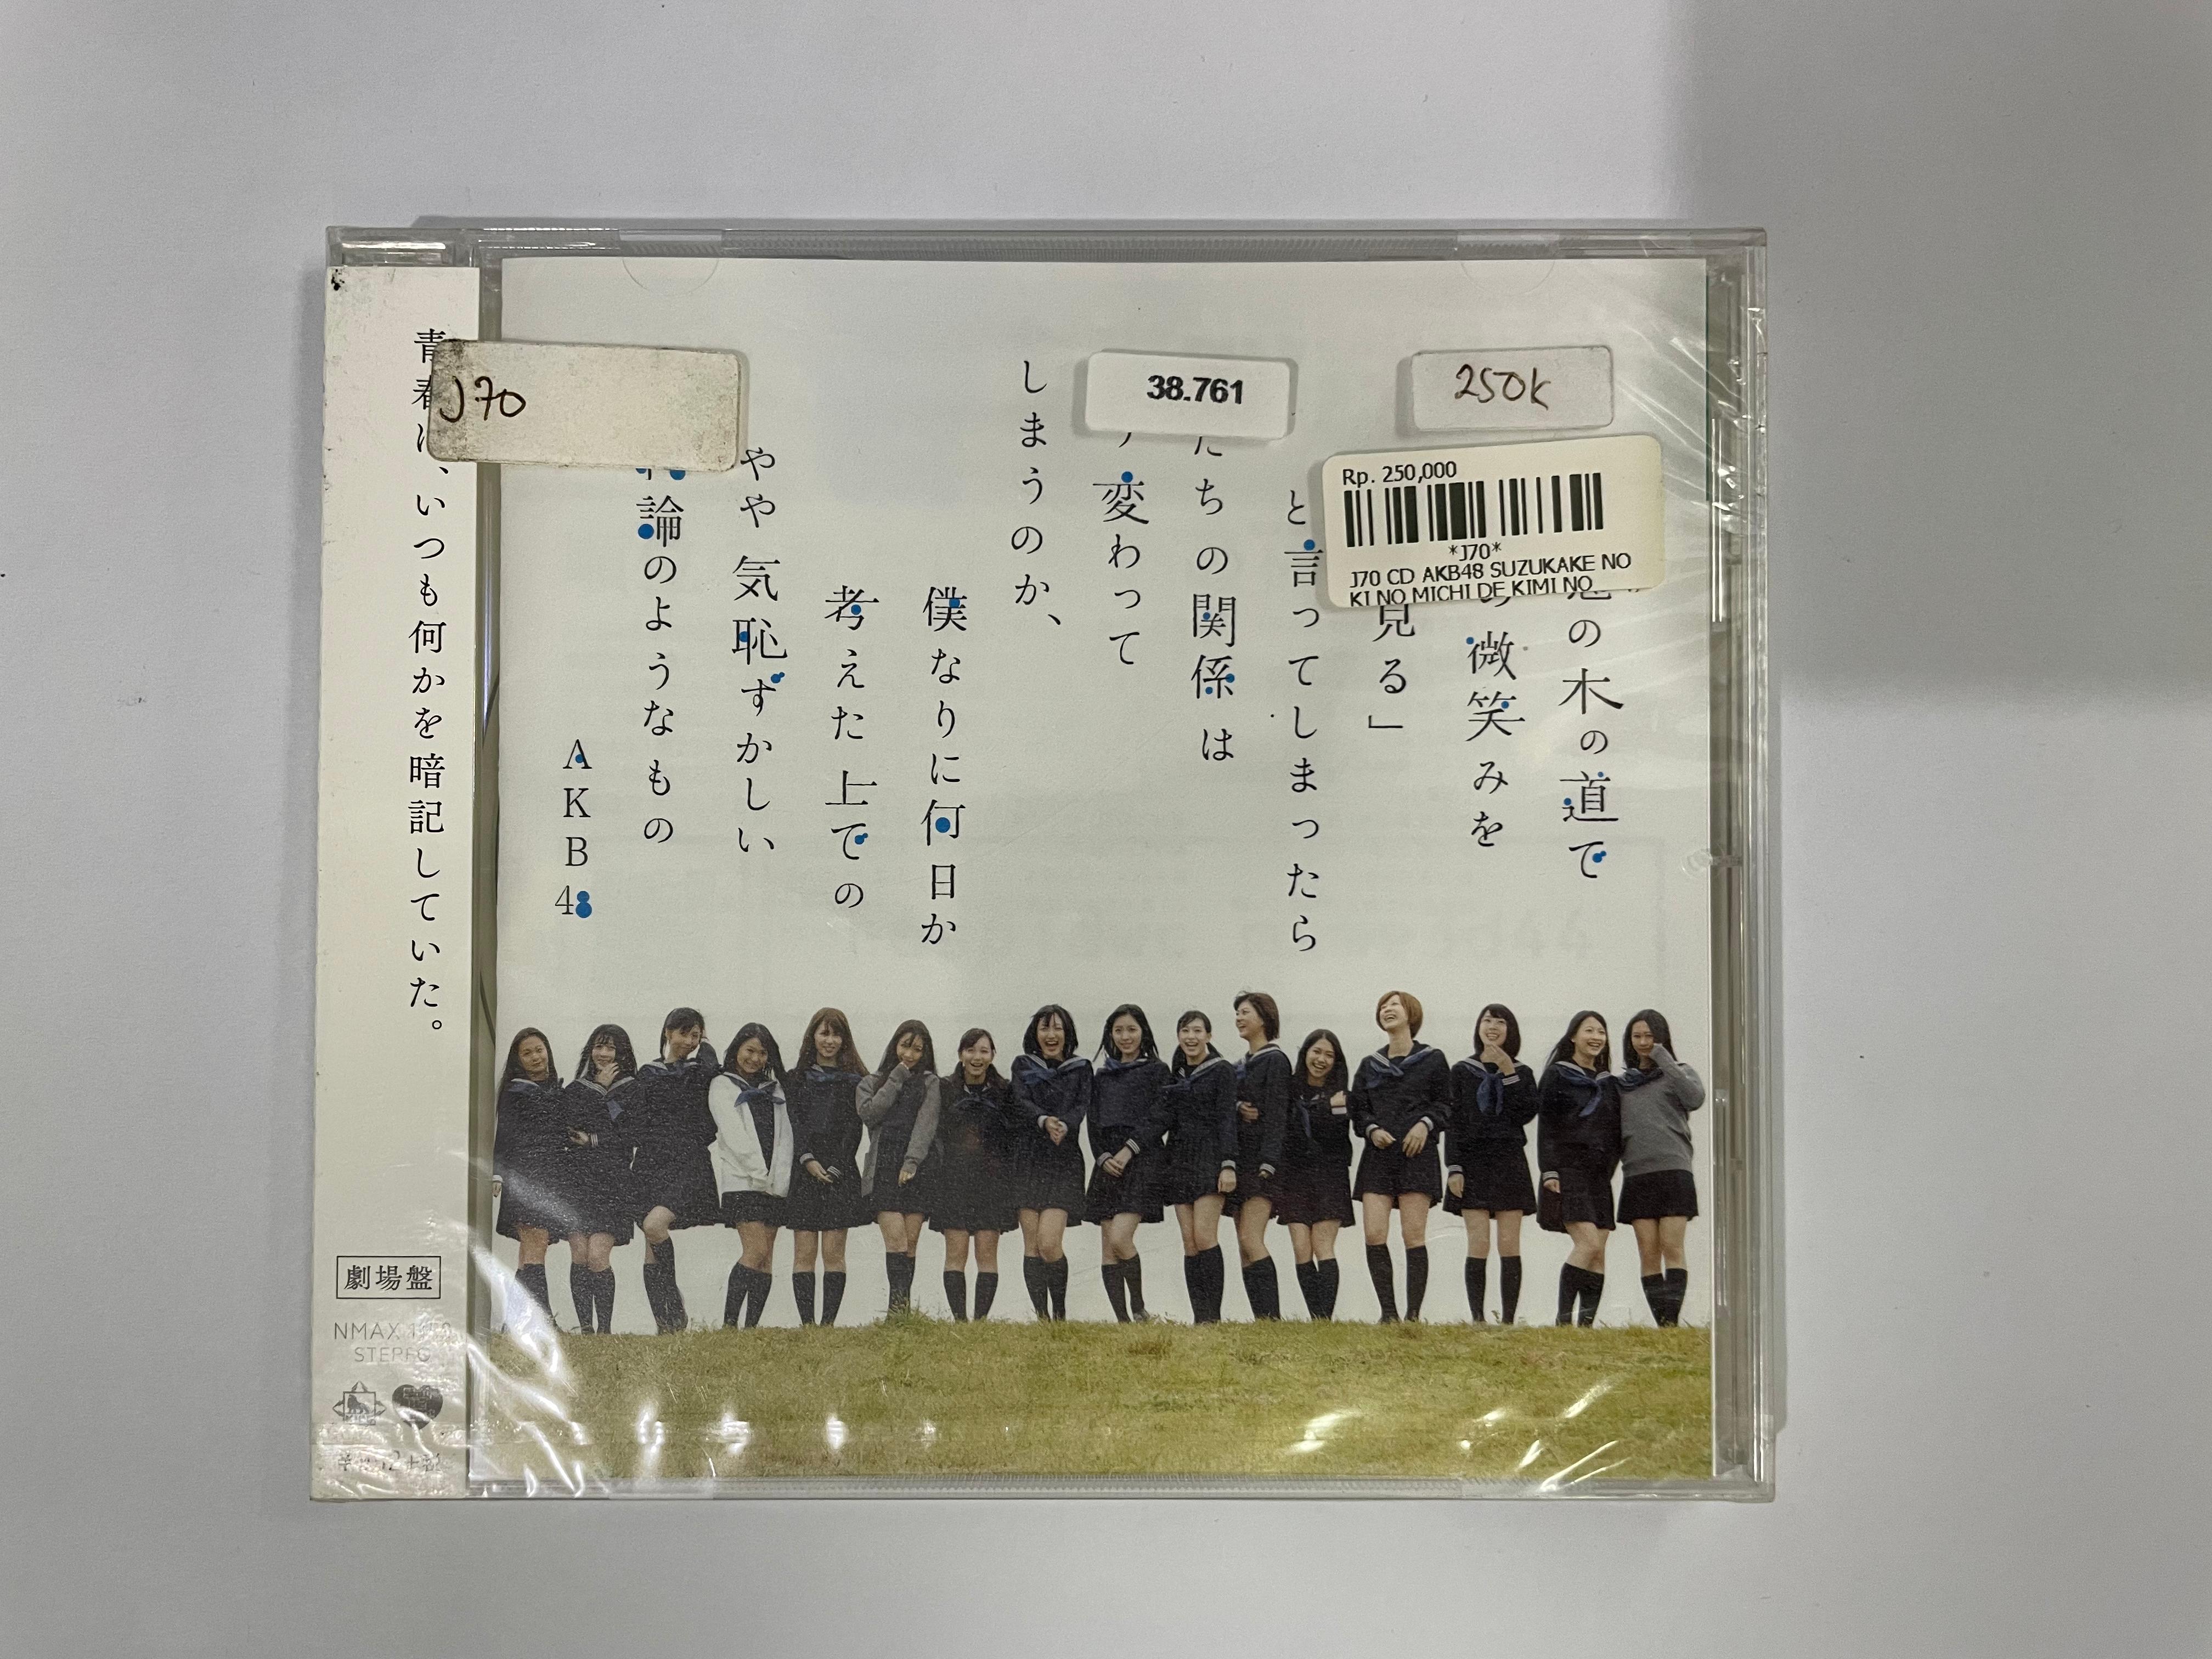 CD AKB48 SUZUKAKE NO KI NO MICHI DE KIMI NO